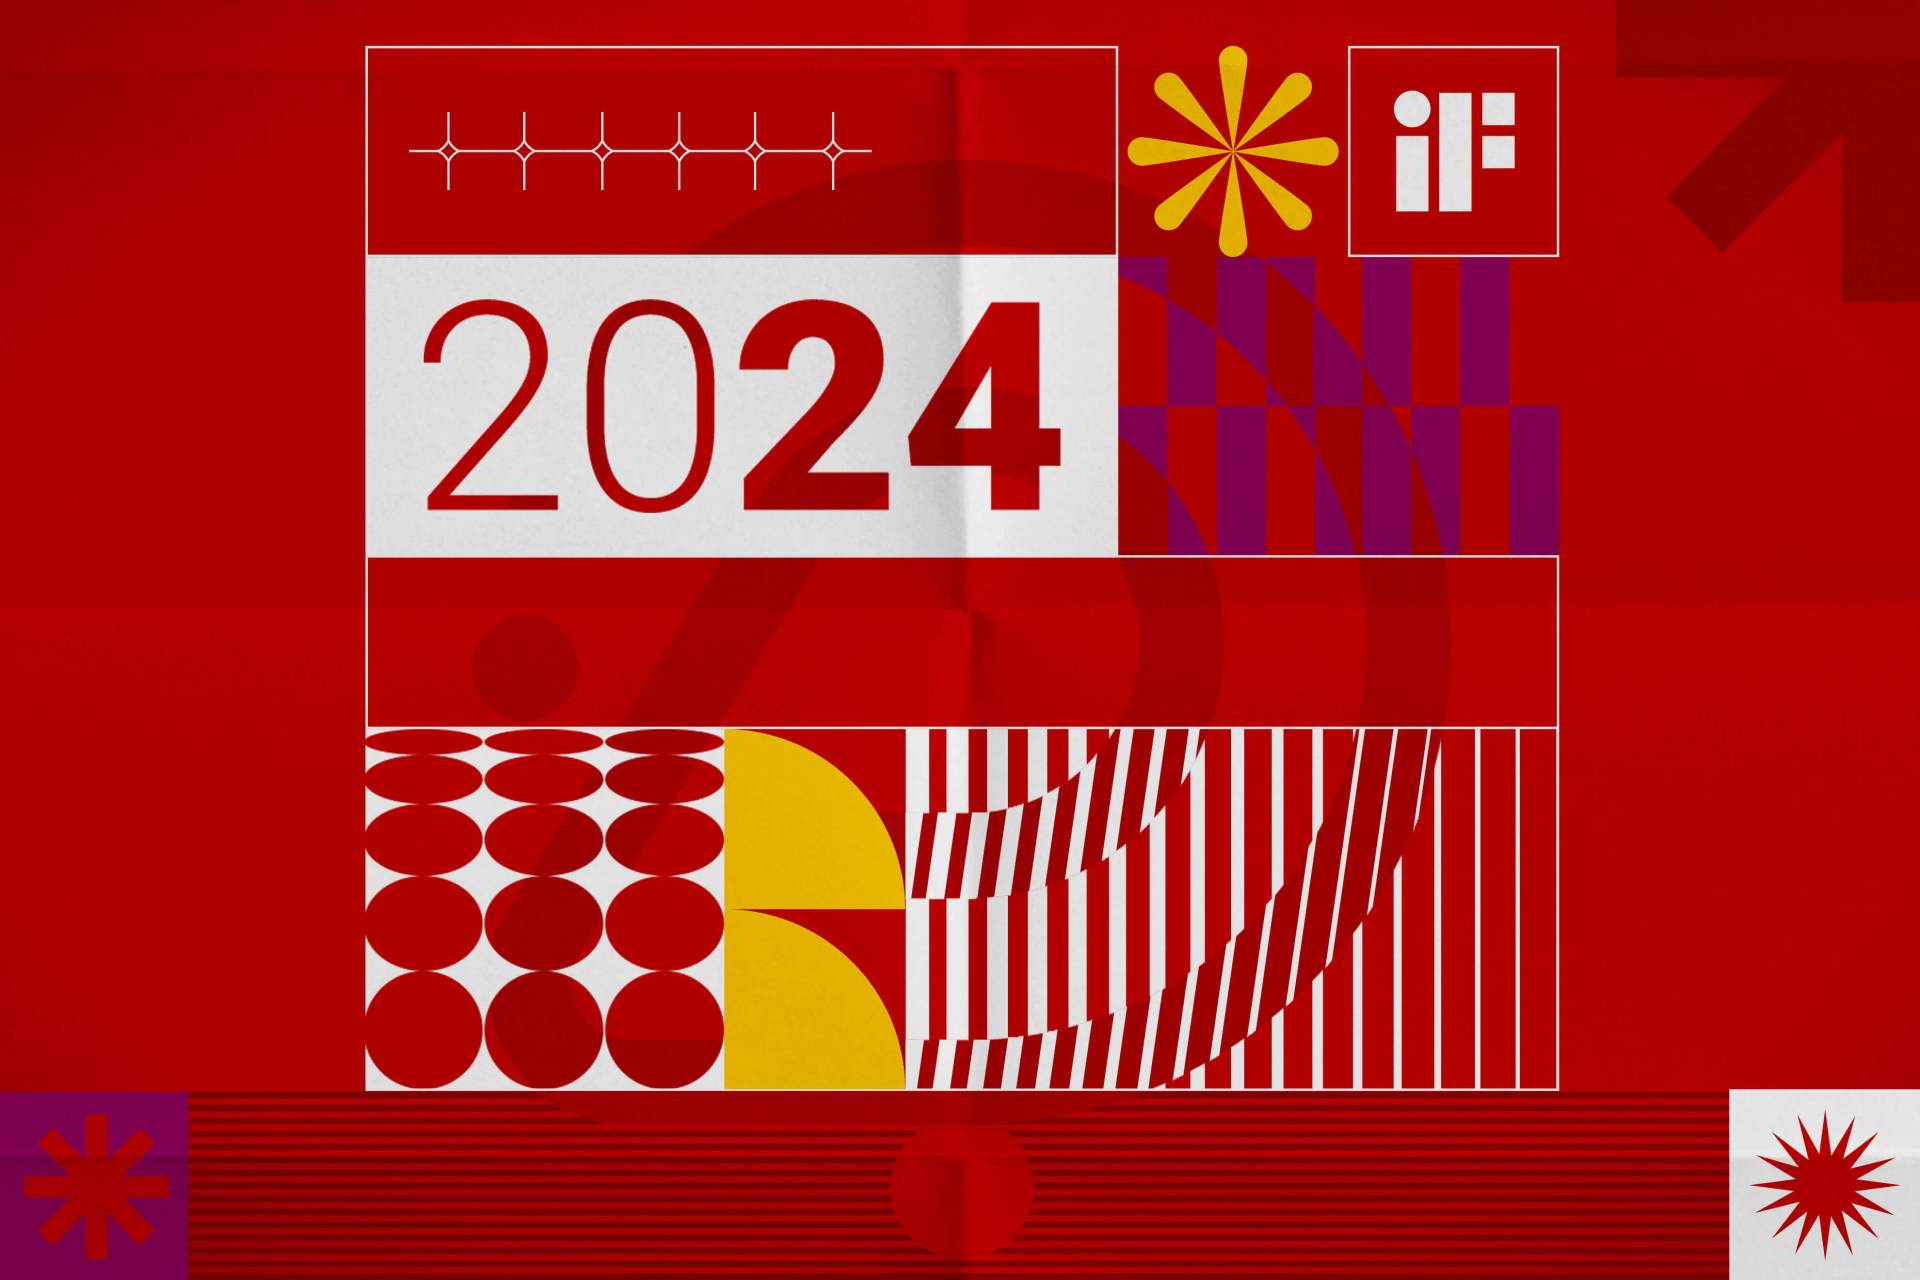 design inovador e sustentável, destacando tendências emergentes para 2024.